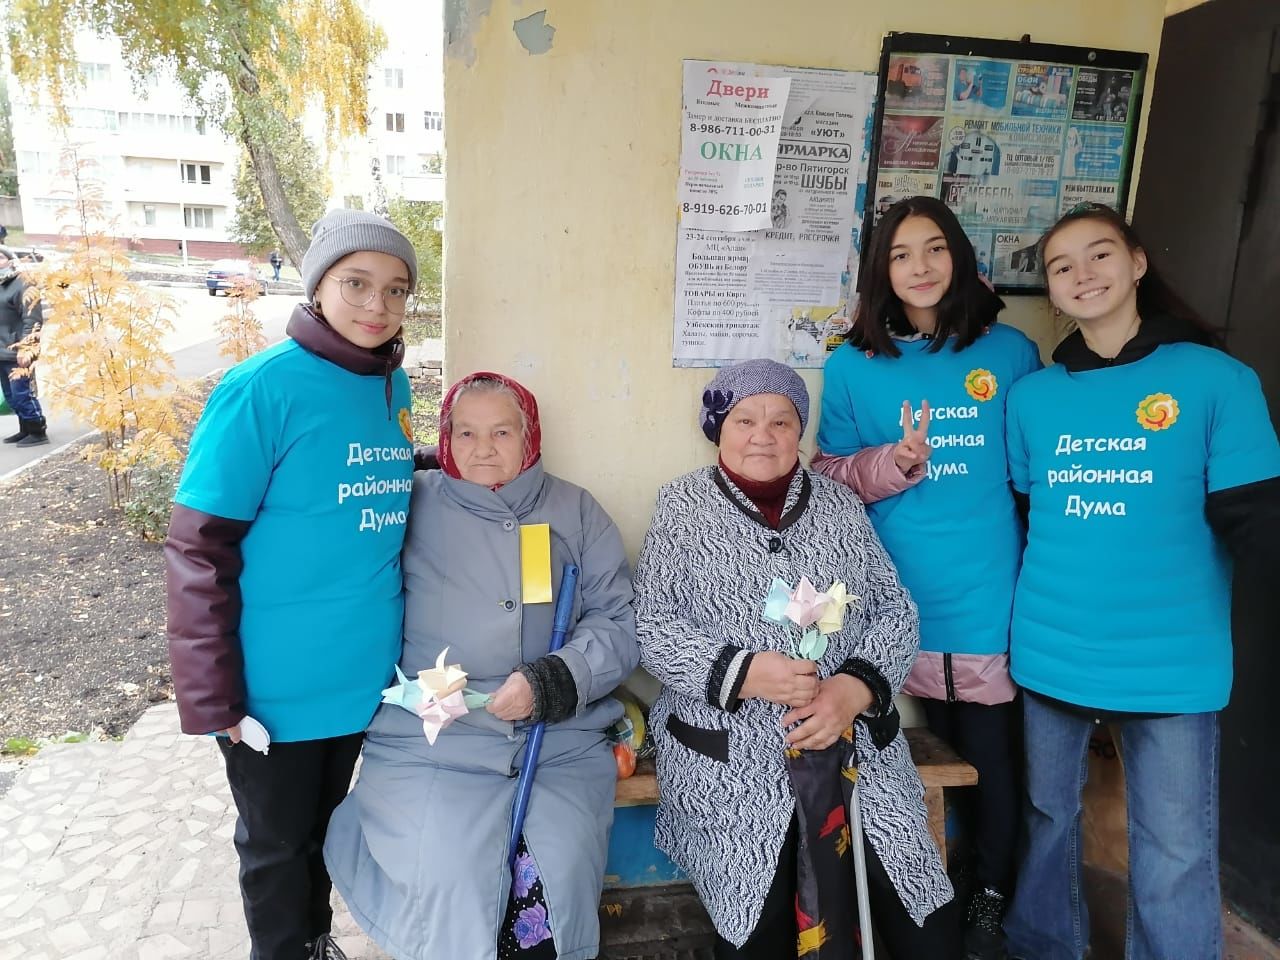 Камполянские активисты поздравили жителей поселка с Днем пожилых людей